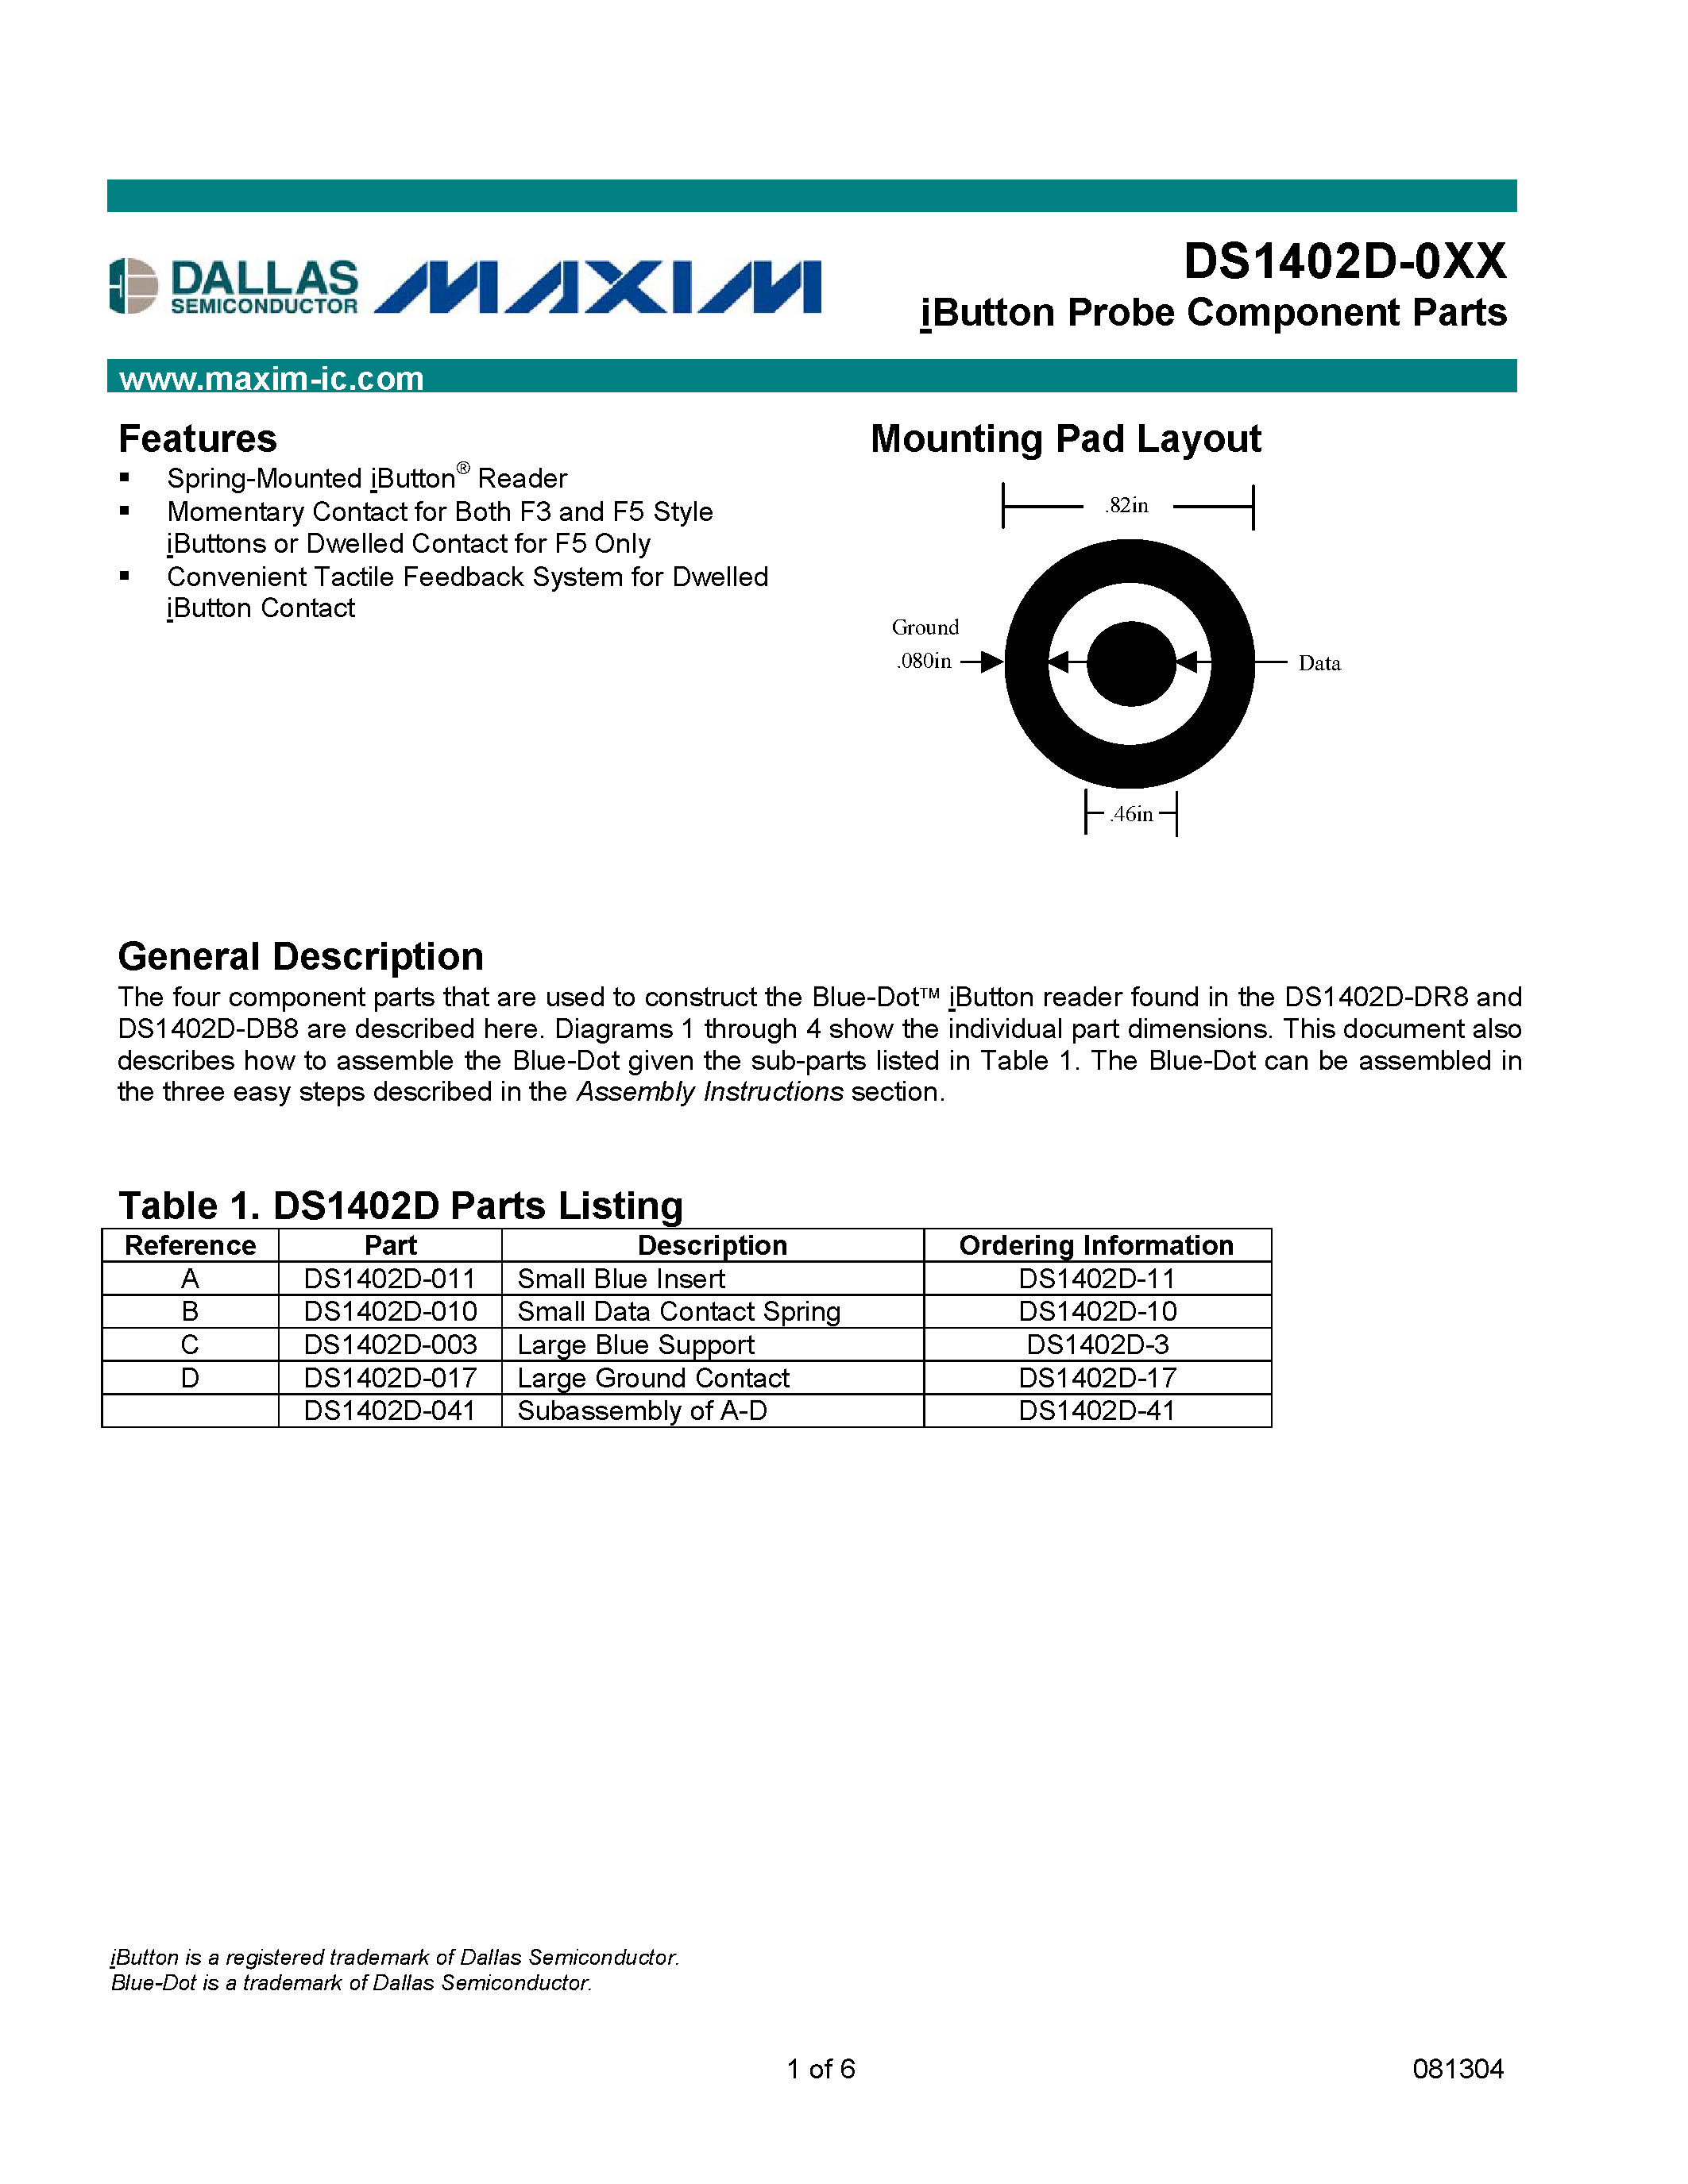 Даташит DS1402D-10 - iButton Probe Component Parts страница 1